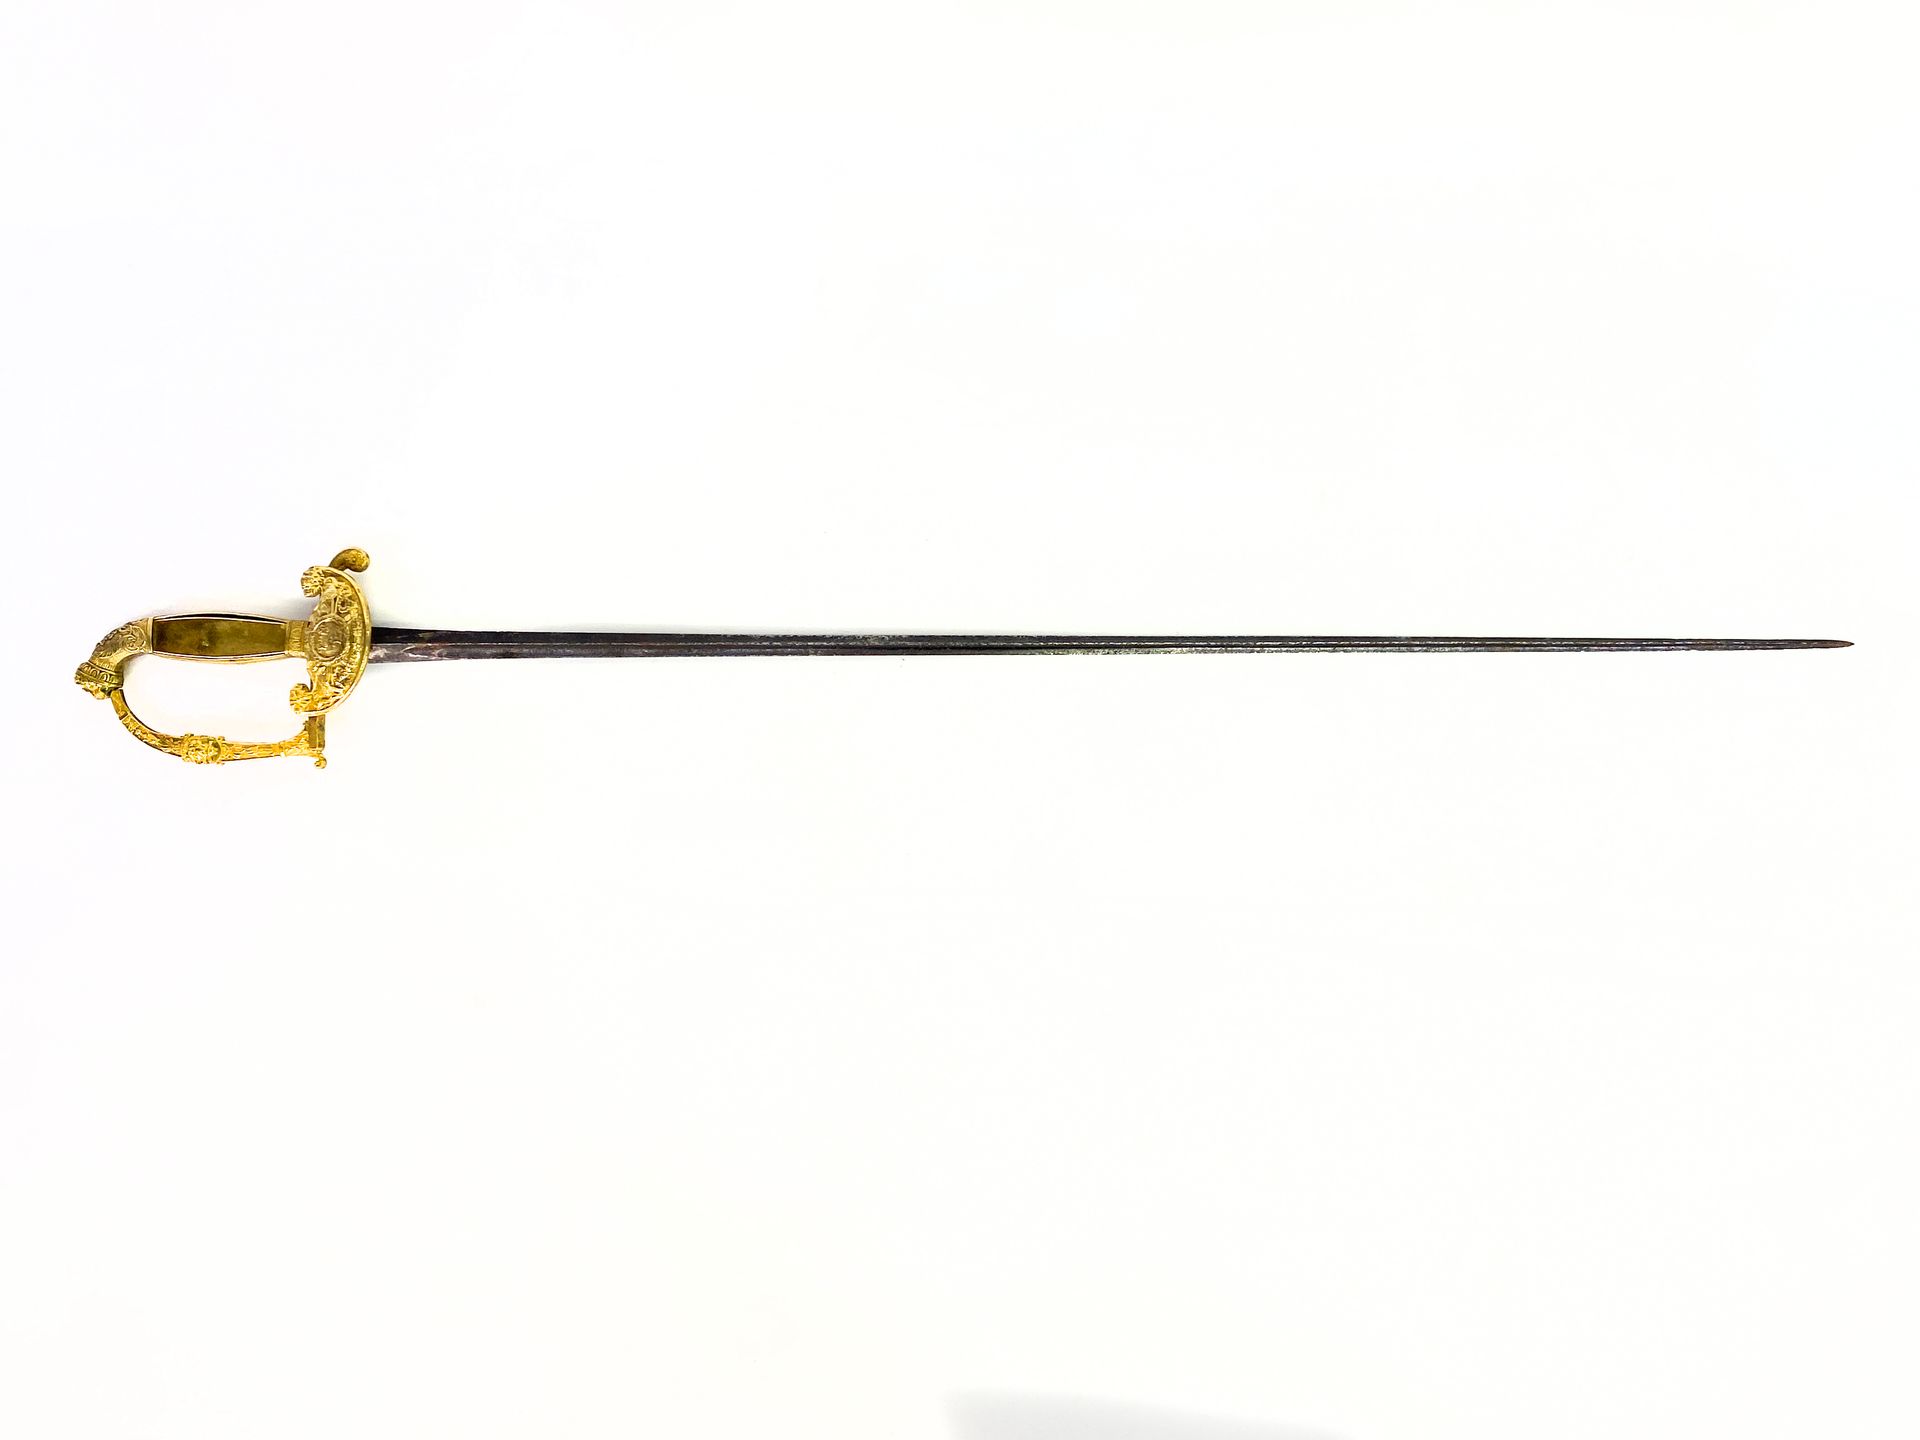 军官的剑，修复时期。 鎏金青铜镶嵌在羊脂玉背景上。 鞍座为狮子头形状